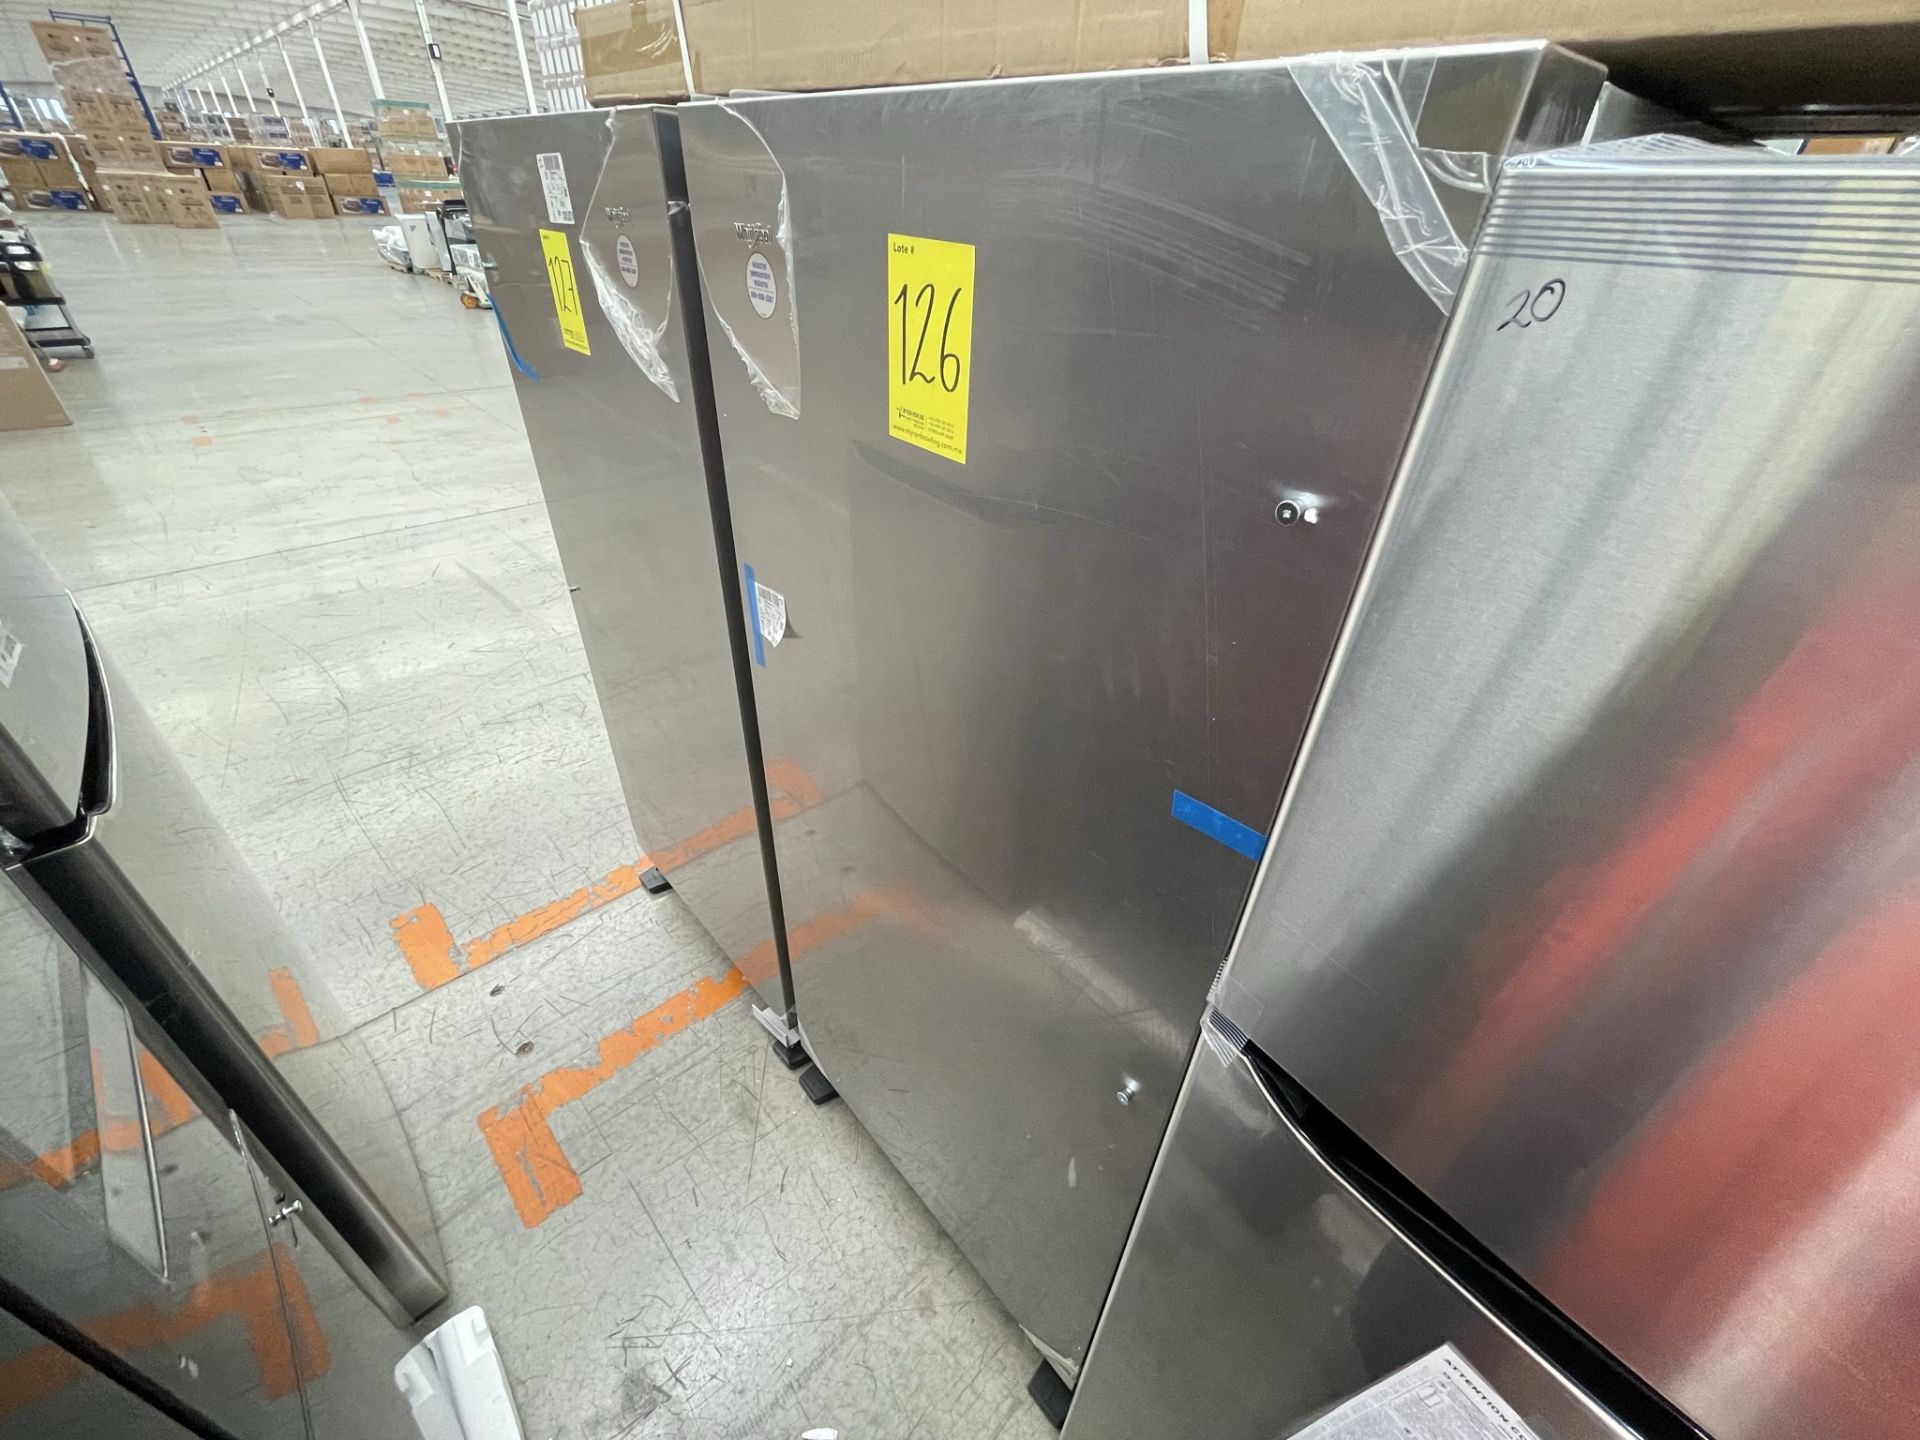 (EQUIPO NUEVO) 1 Refrigerador Marca WHIRLPOOL, Modelo WSZ57L18DM, Serie 004291, Color GRIS, (Nuevo, - Image 3 of 8